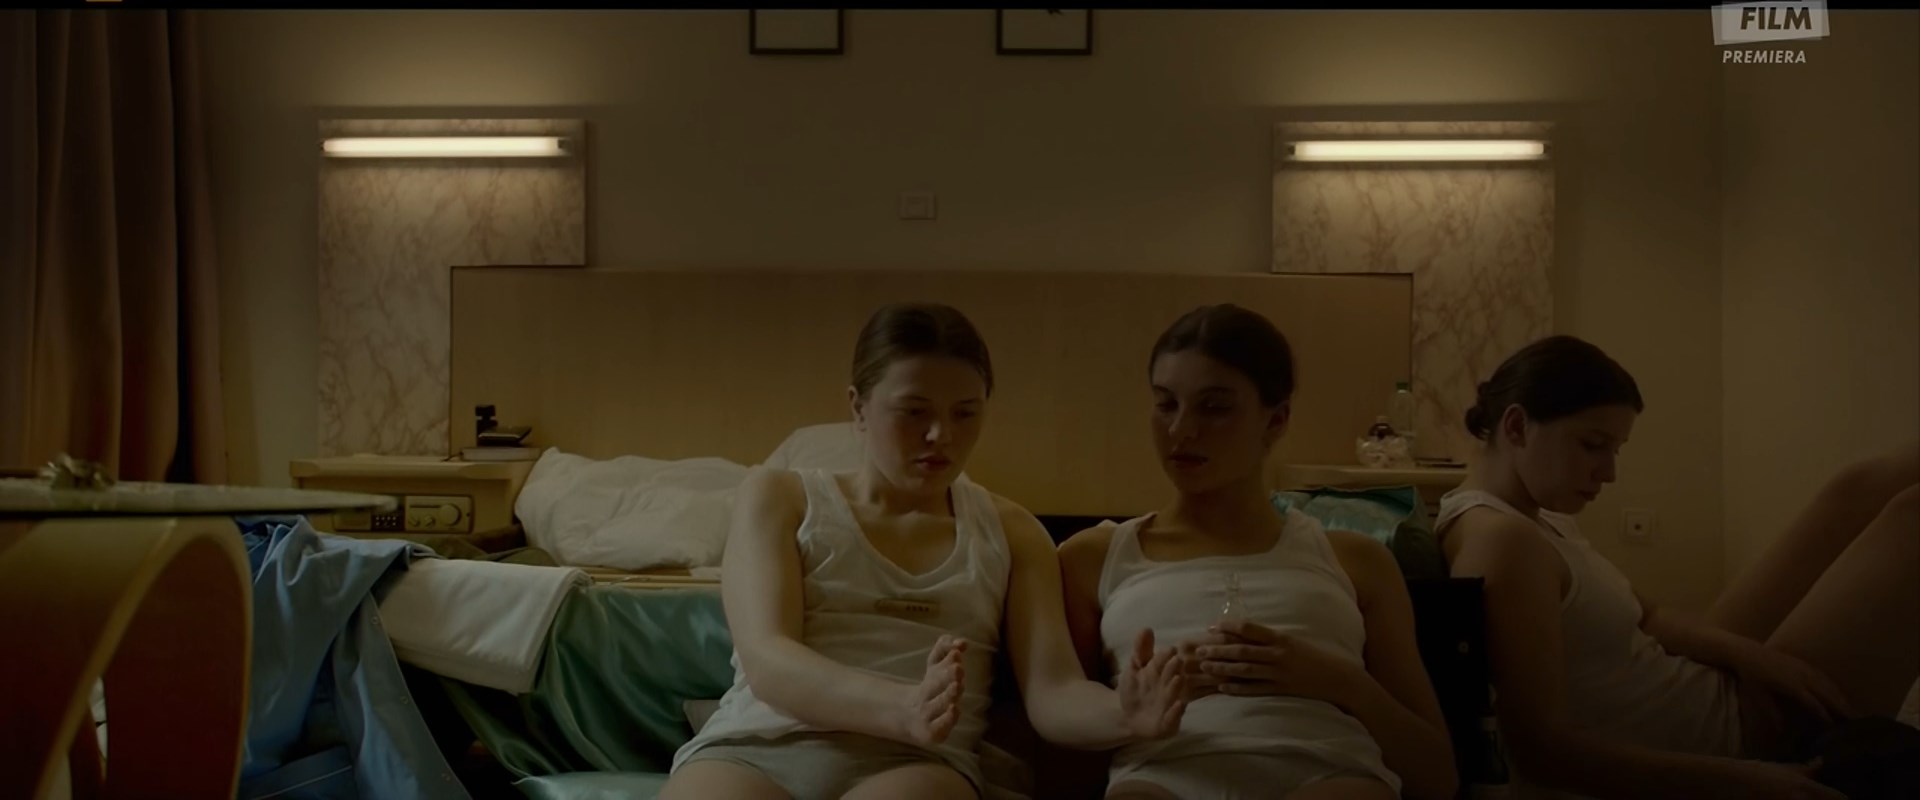 Watch Online - Paulina Walendziak, Magdalena Wieczorek, etc - Monument  (2018) HD 1080p